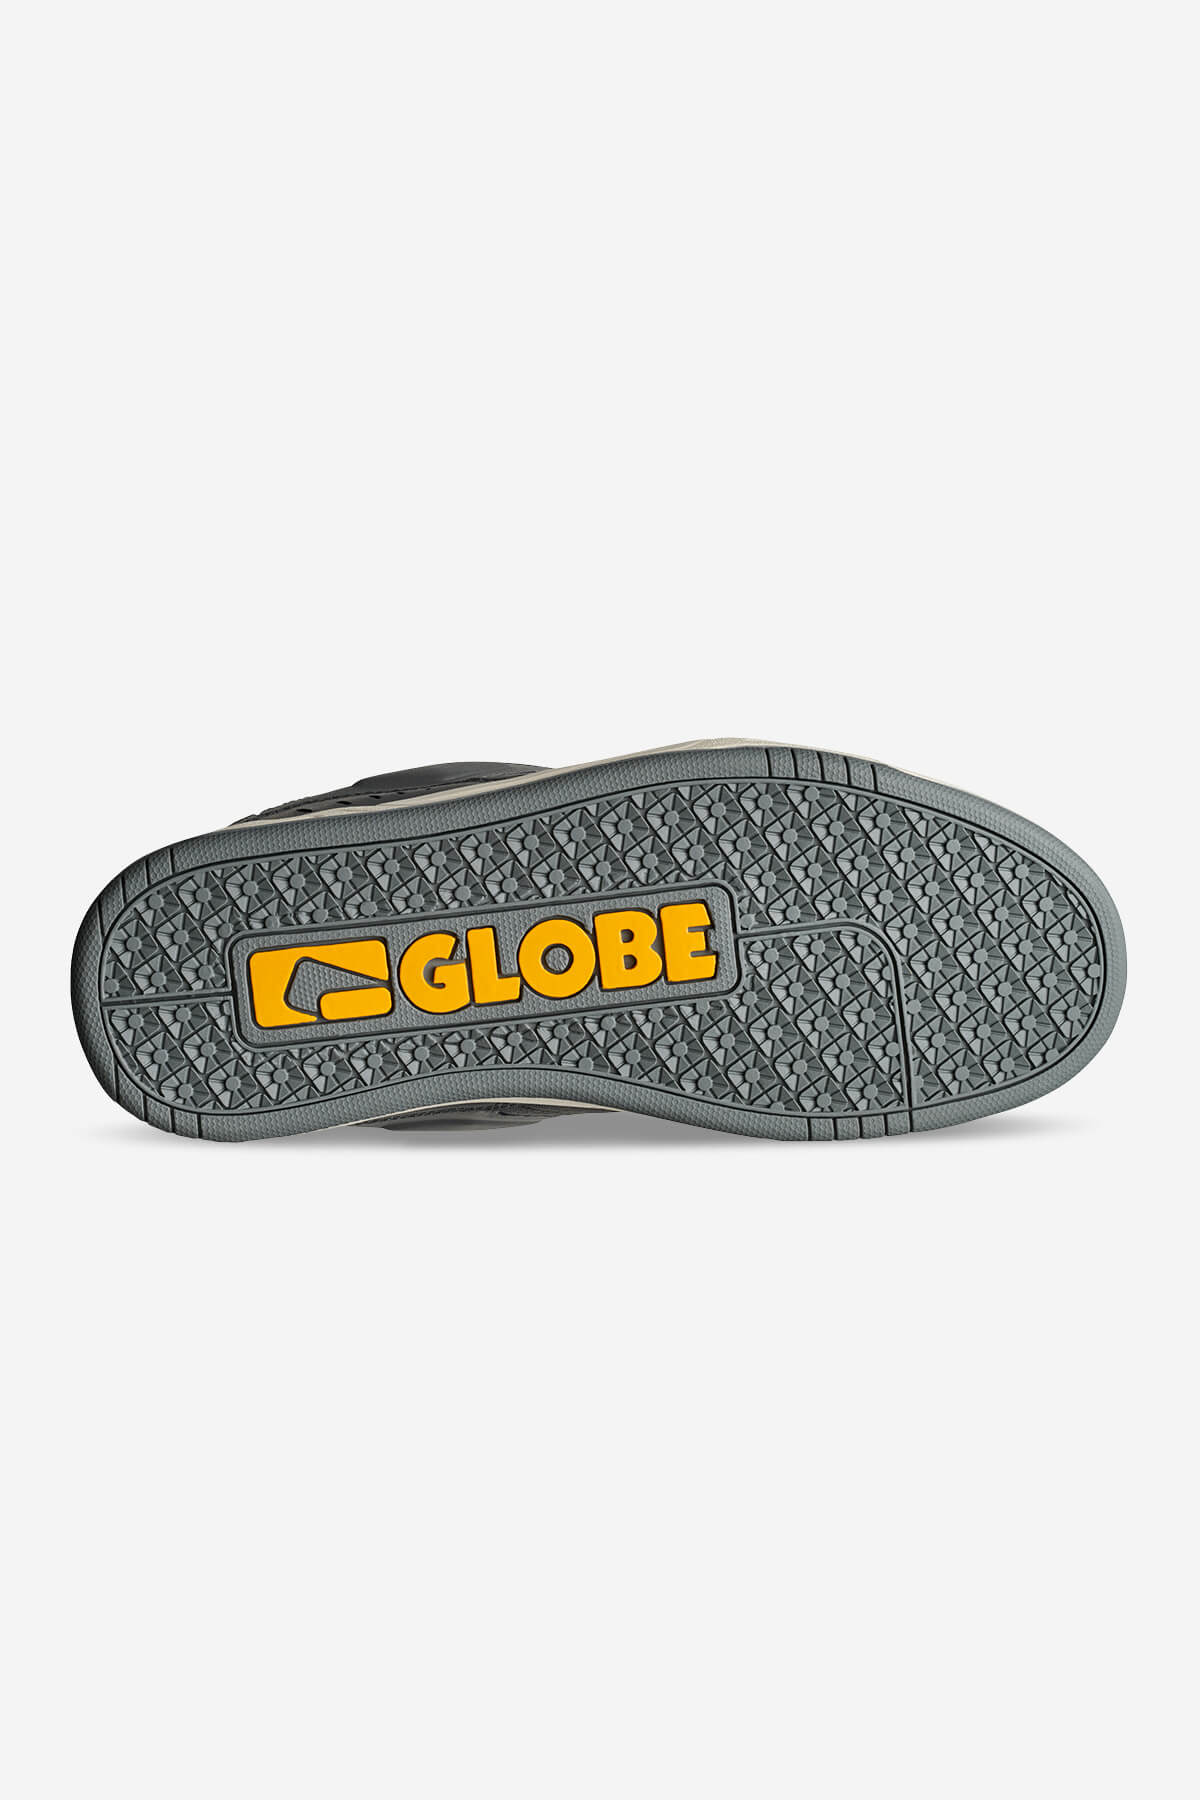 Globe - Fusion - Blei/Antik - skateboard Schuhe